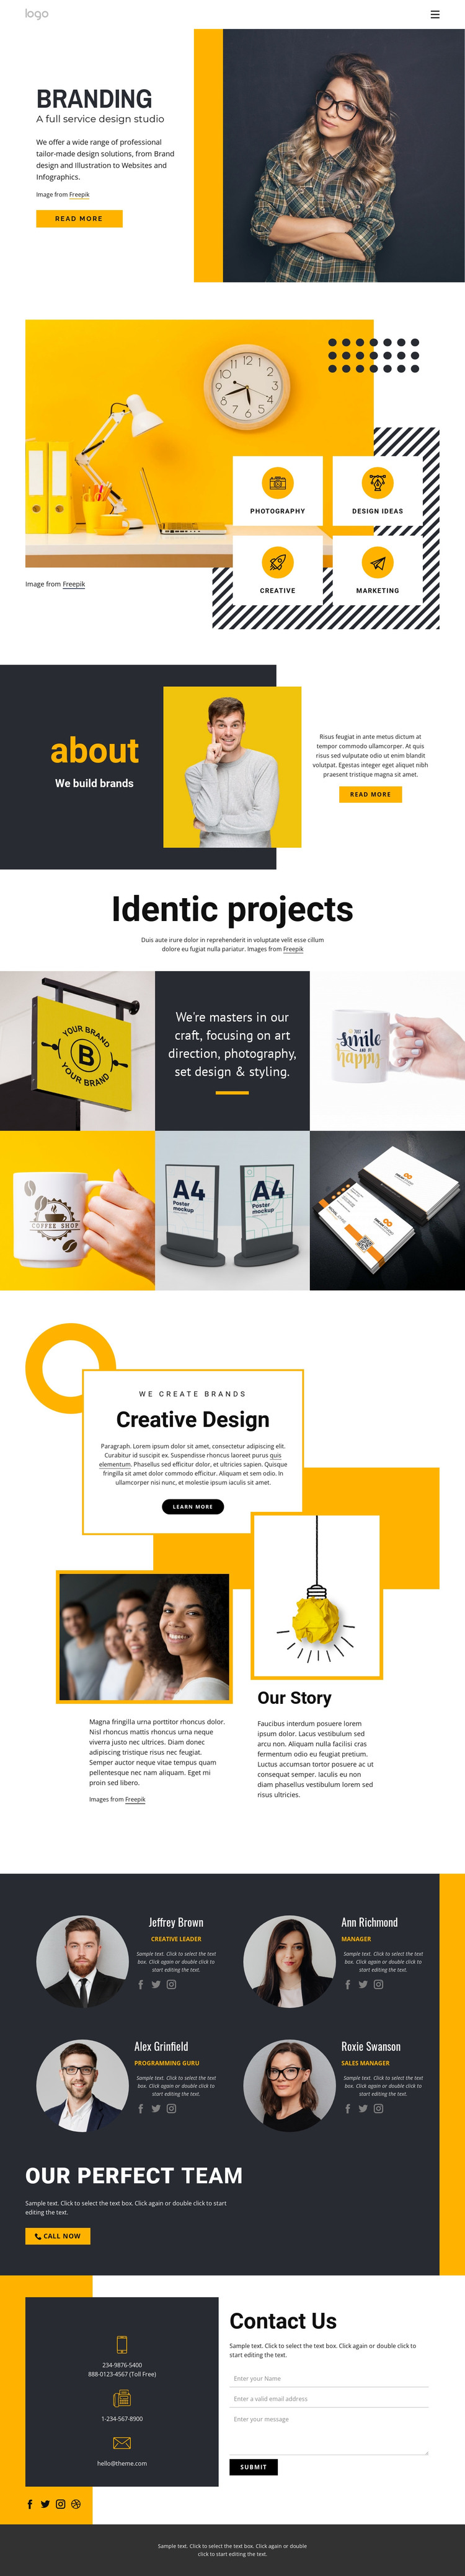 Full-service design studio Web Design